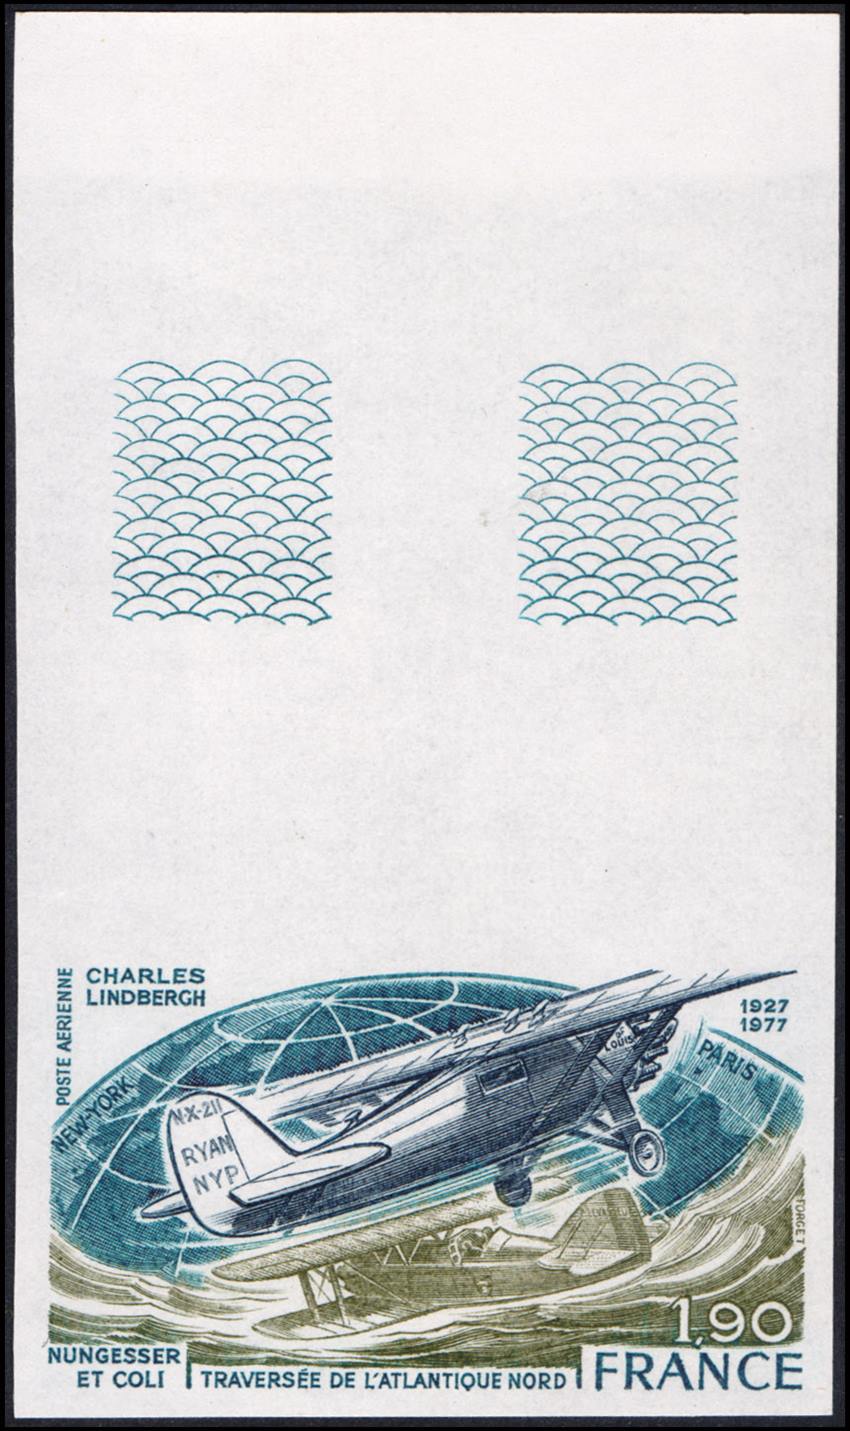 FRANCIA/SELLOS, 1977 - AVIONES - YV 50 - 1 VALOR - SIN DENTAR